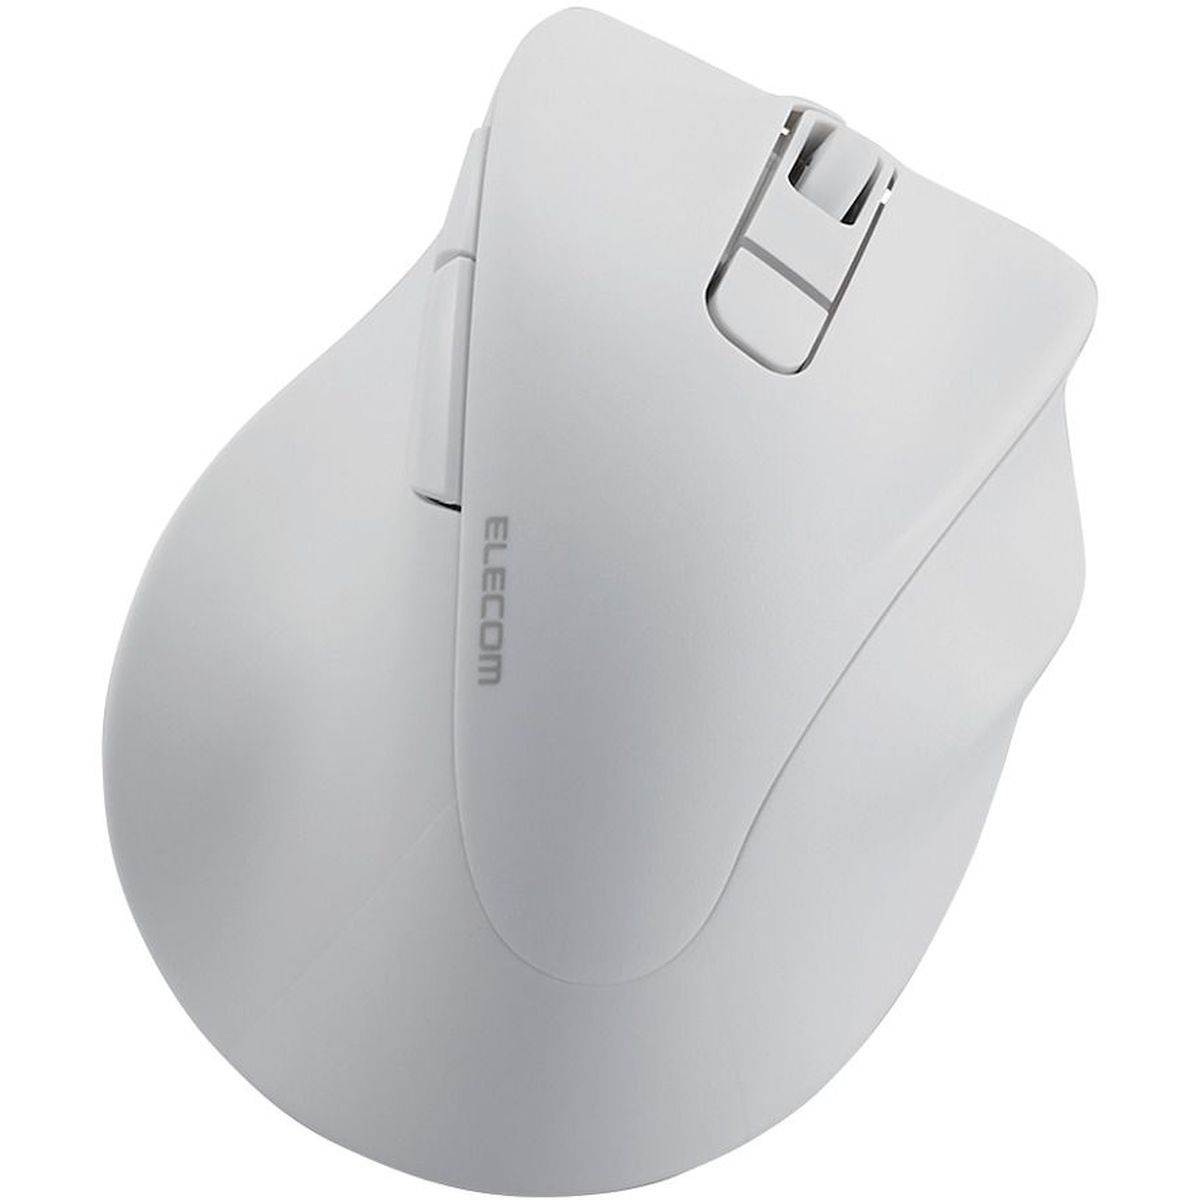 マウス/右手専用/Sサイズ/Bluetooth/5ボタン/ホワイト